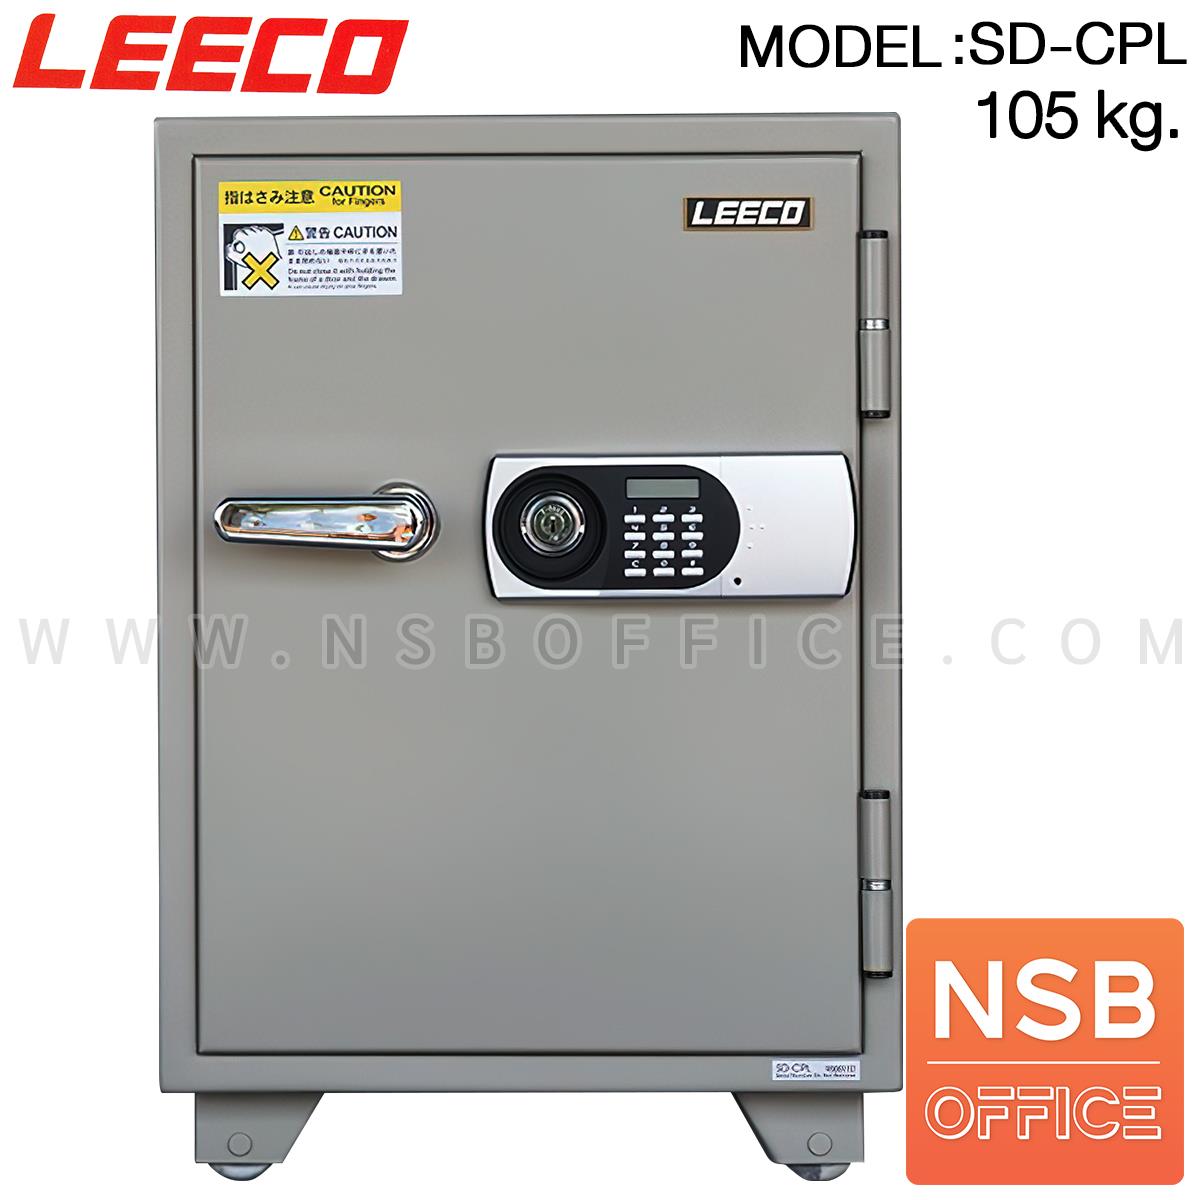 F02A060:ตู้เซฟนิรภัยระบบดิจิตอล 105 กก. รุ่น SD-CPL   